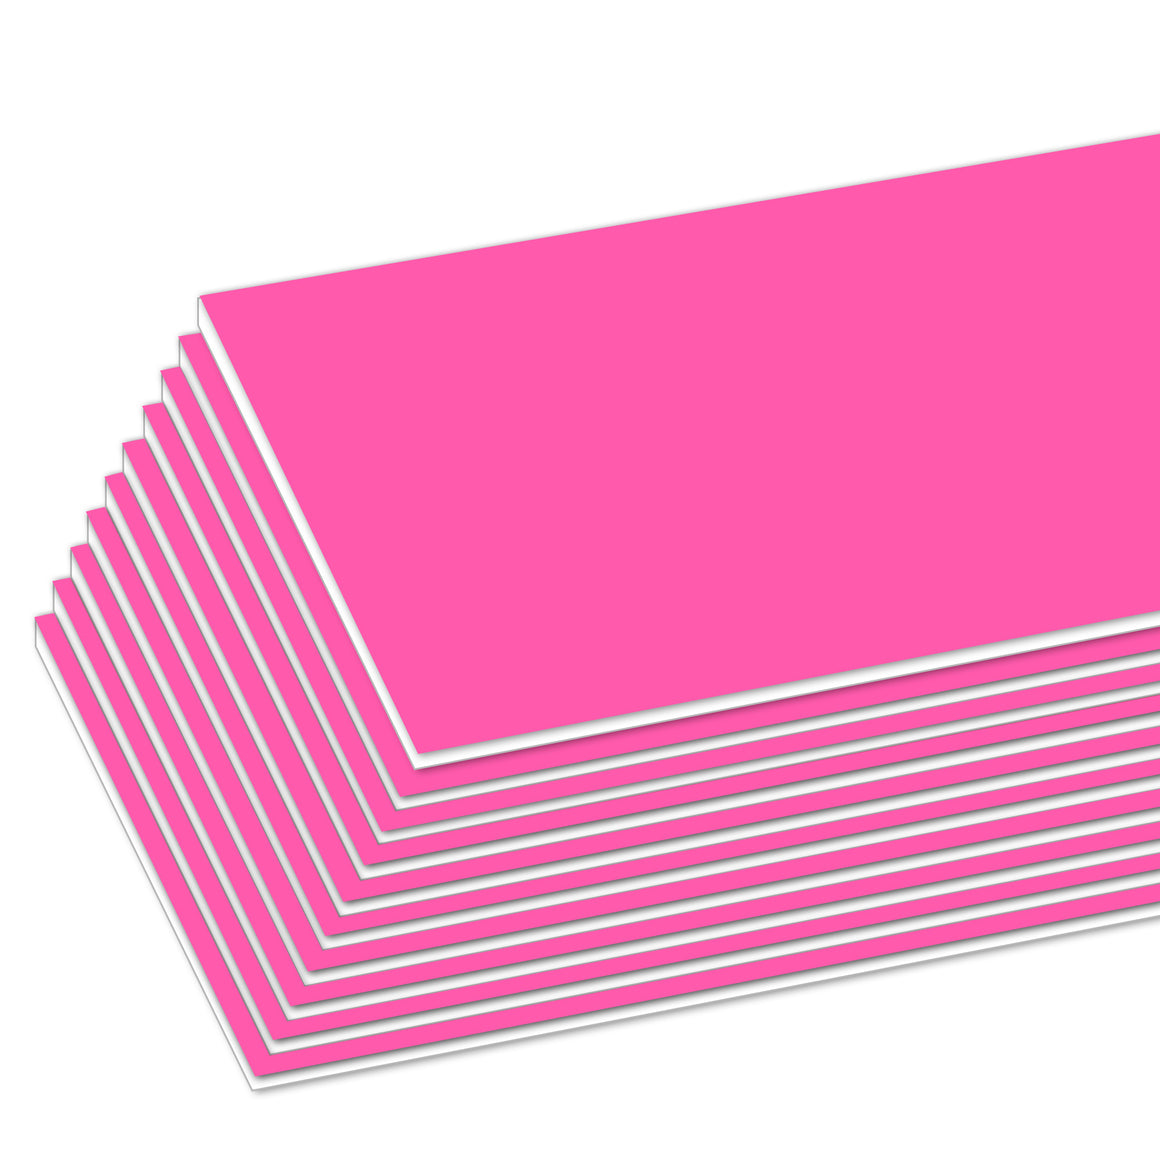 20" X 30" Fluorescent Pink Foam Board